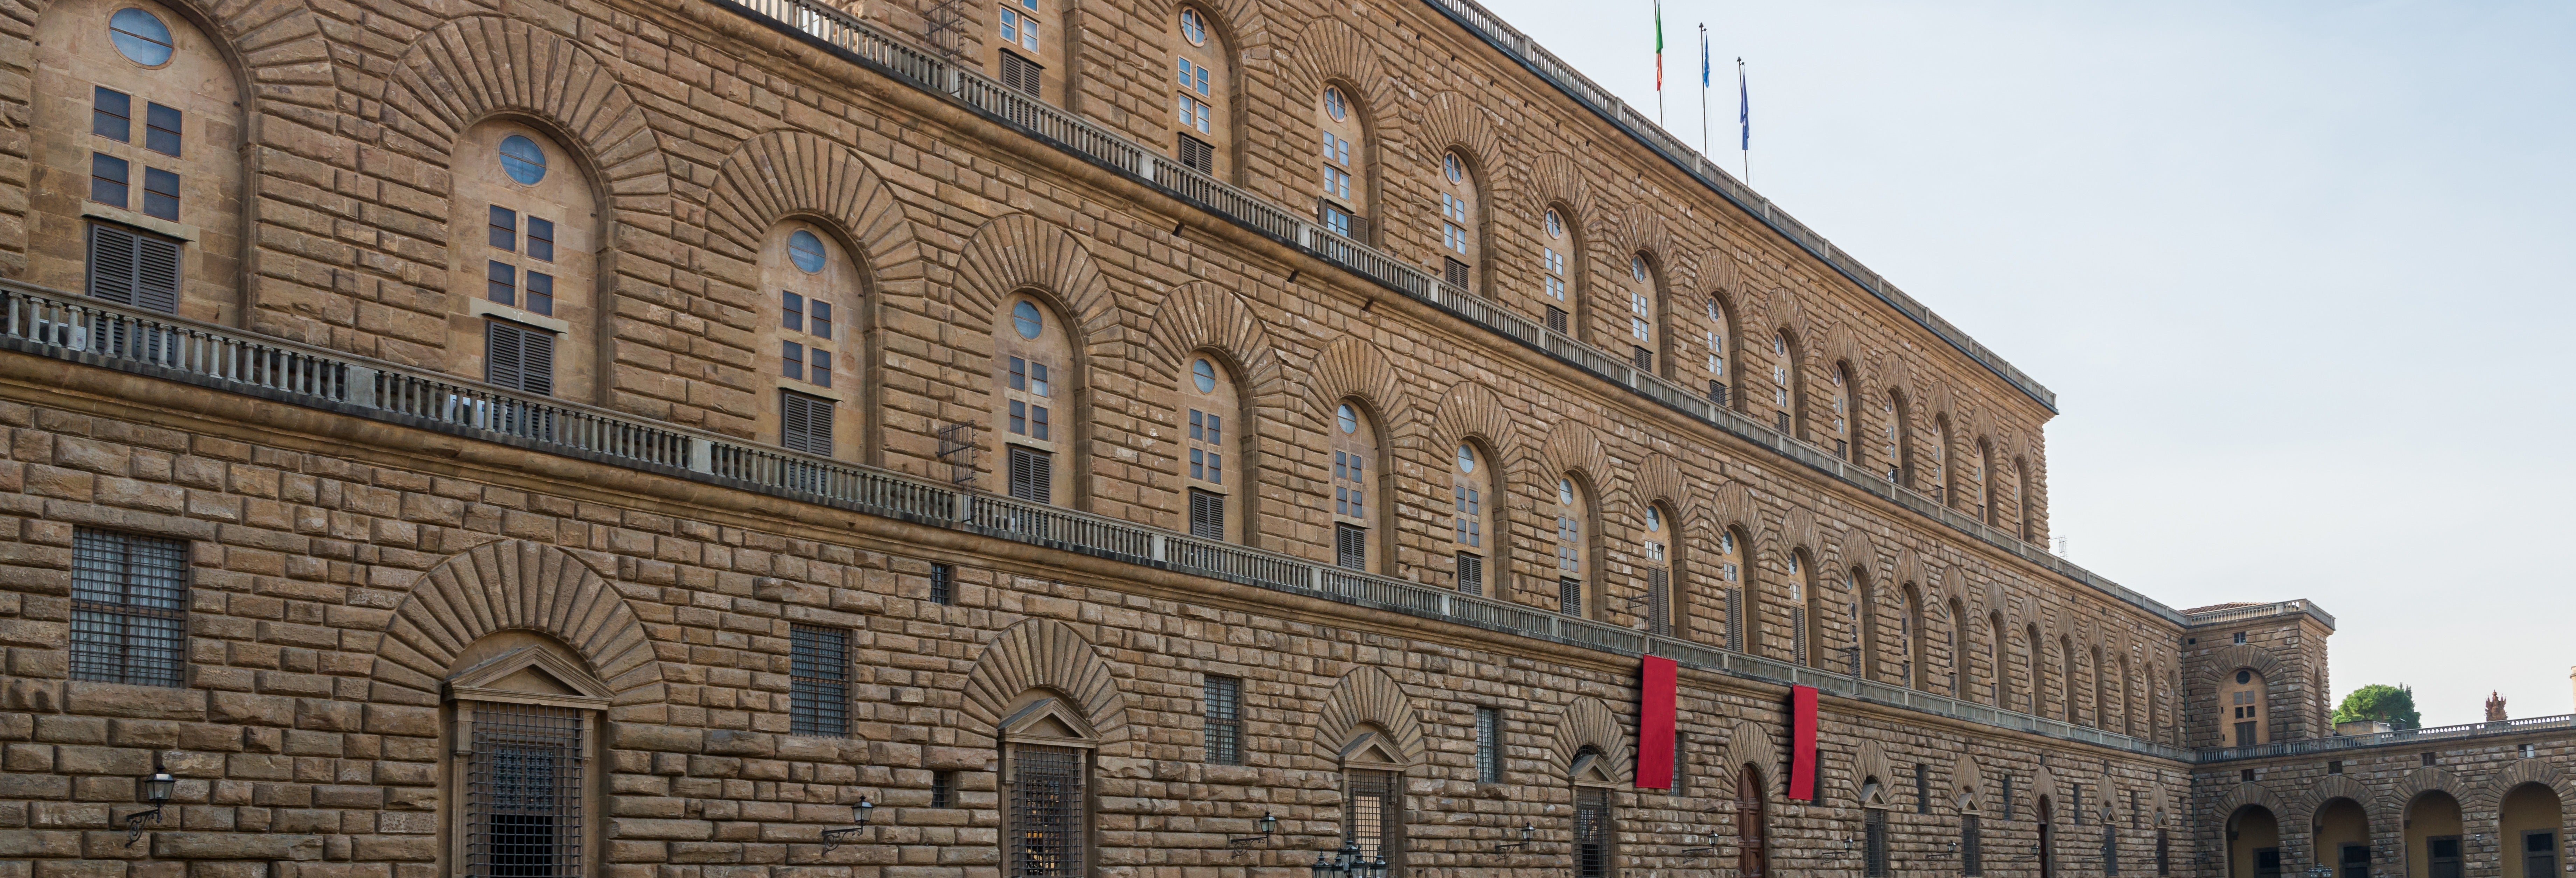 Visita guiada pelo Palácio Pitti e Galeria Palatina